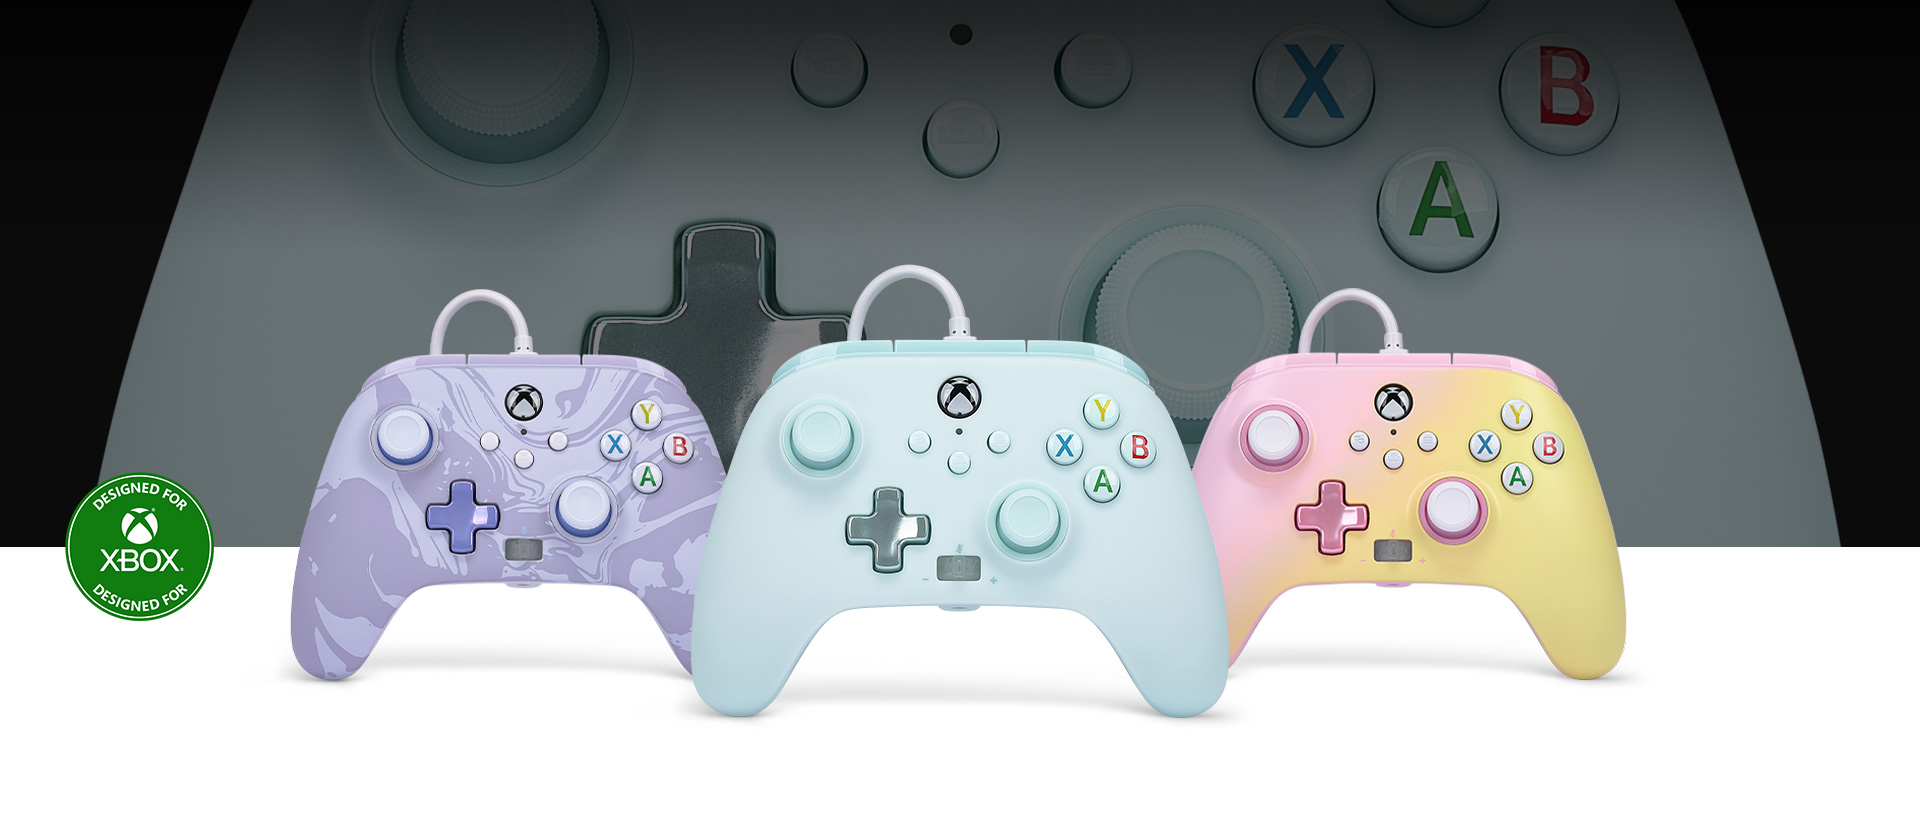 Logotipo Diseñado para Xbox, mando de color azul algodón con controles de color camuflaje púrpura y limonada rosa al lado